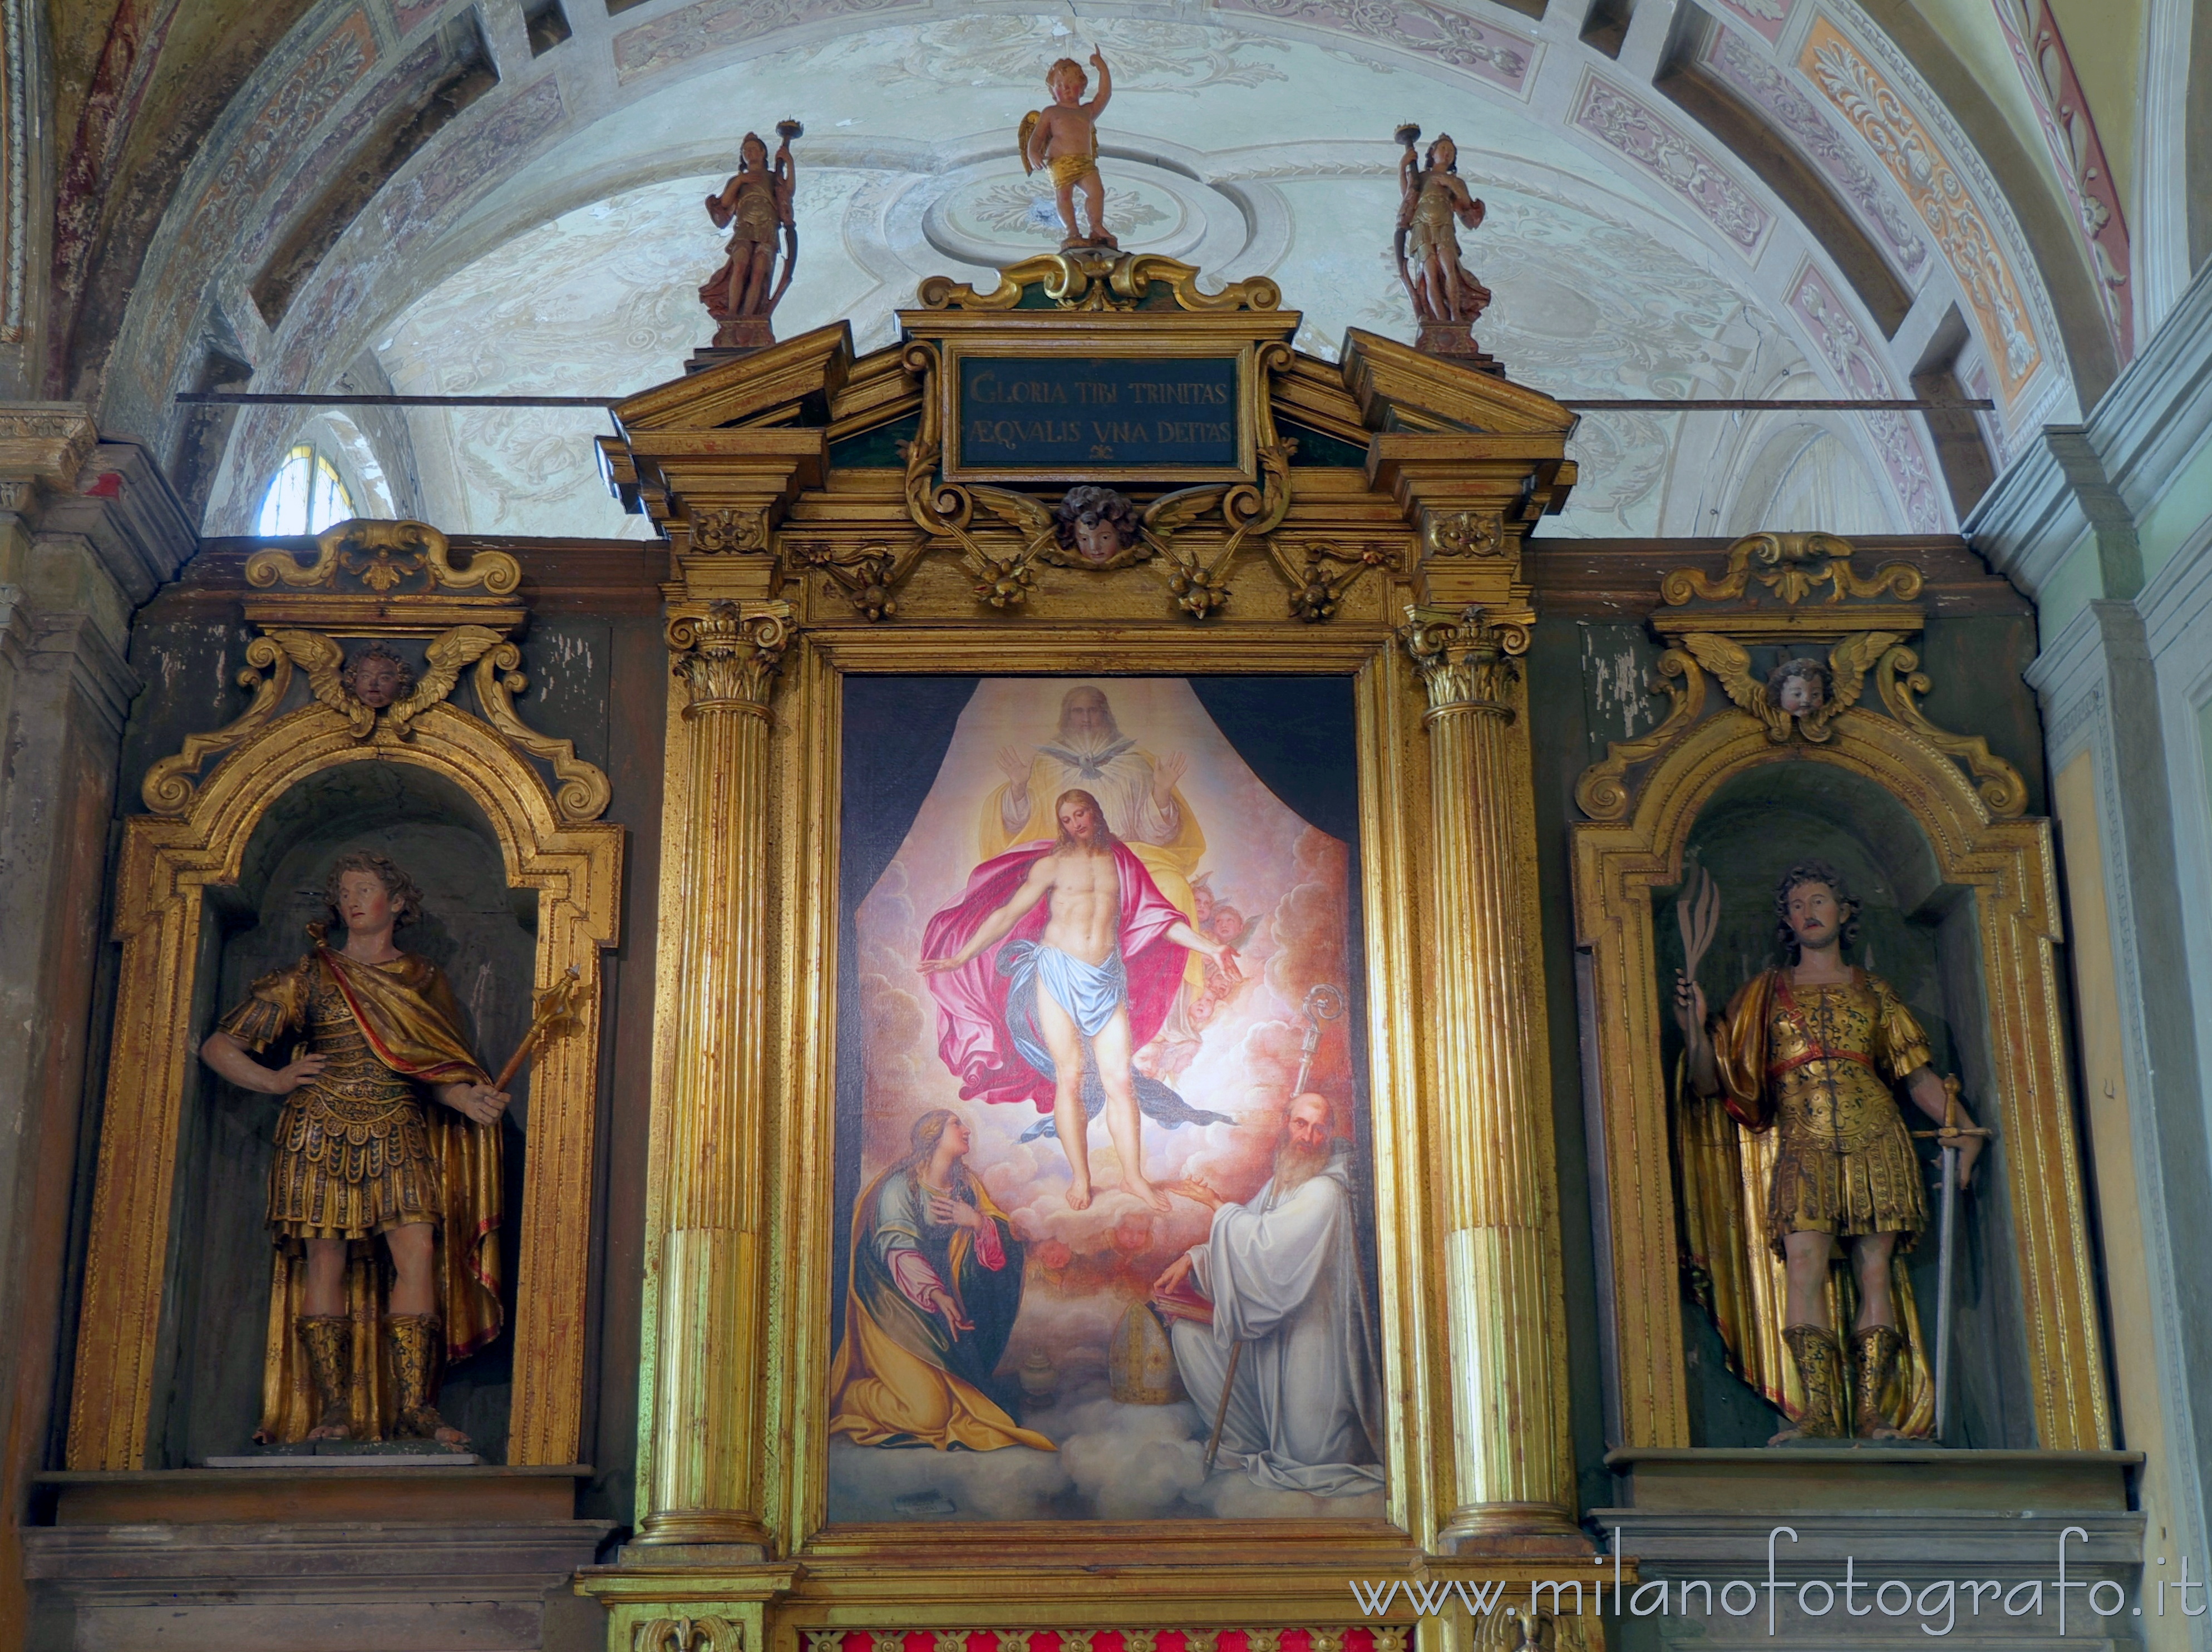 Romano di Lombardia (Bergamo, Italy): Trinity of Enea Salmeggia in the Basilica of San Defendente - Romano di Lombardia (Bergamo, Italy)